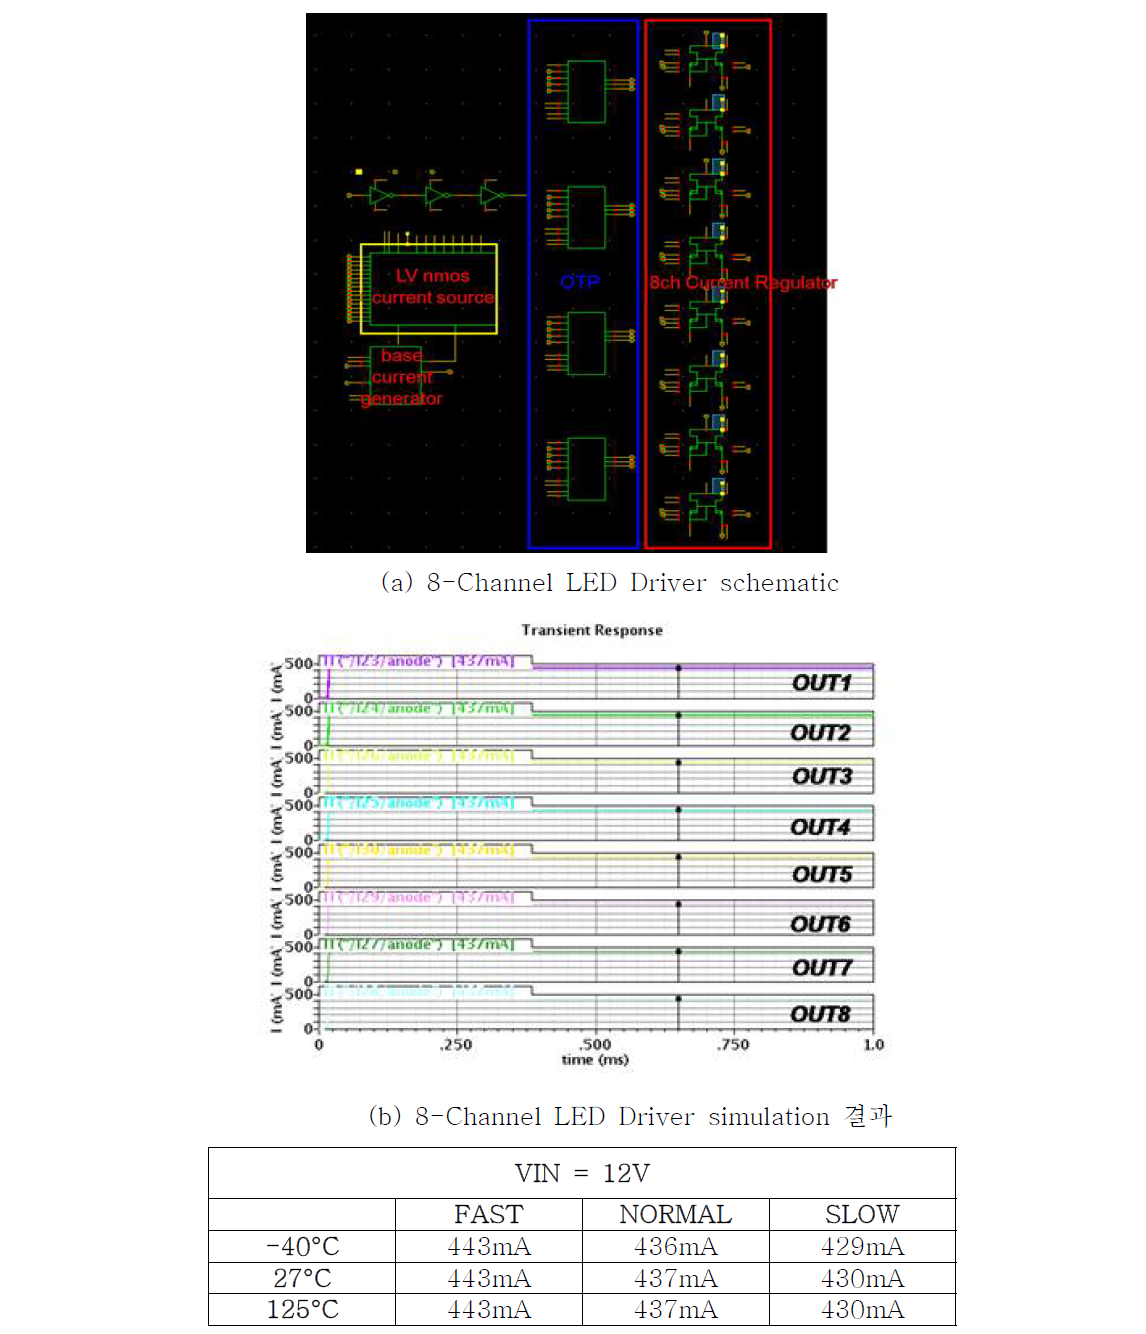 설계된 8-channel LED Driver schematic 및 simulation 결과